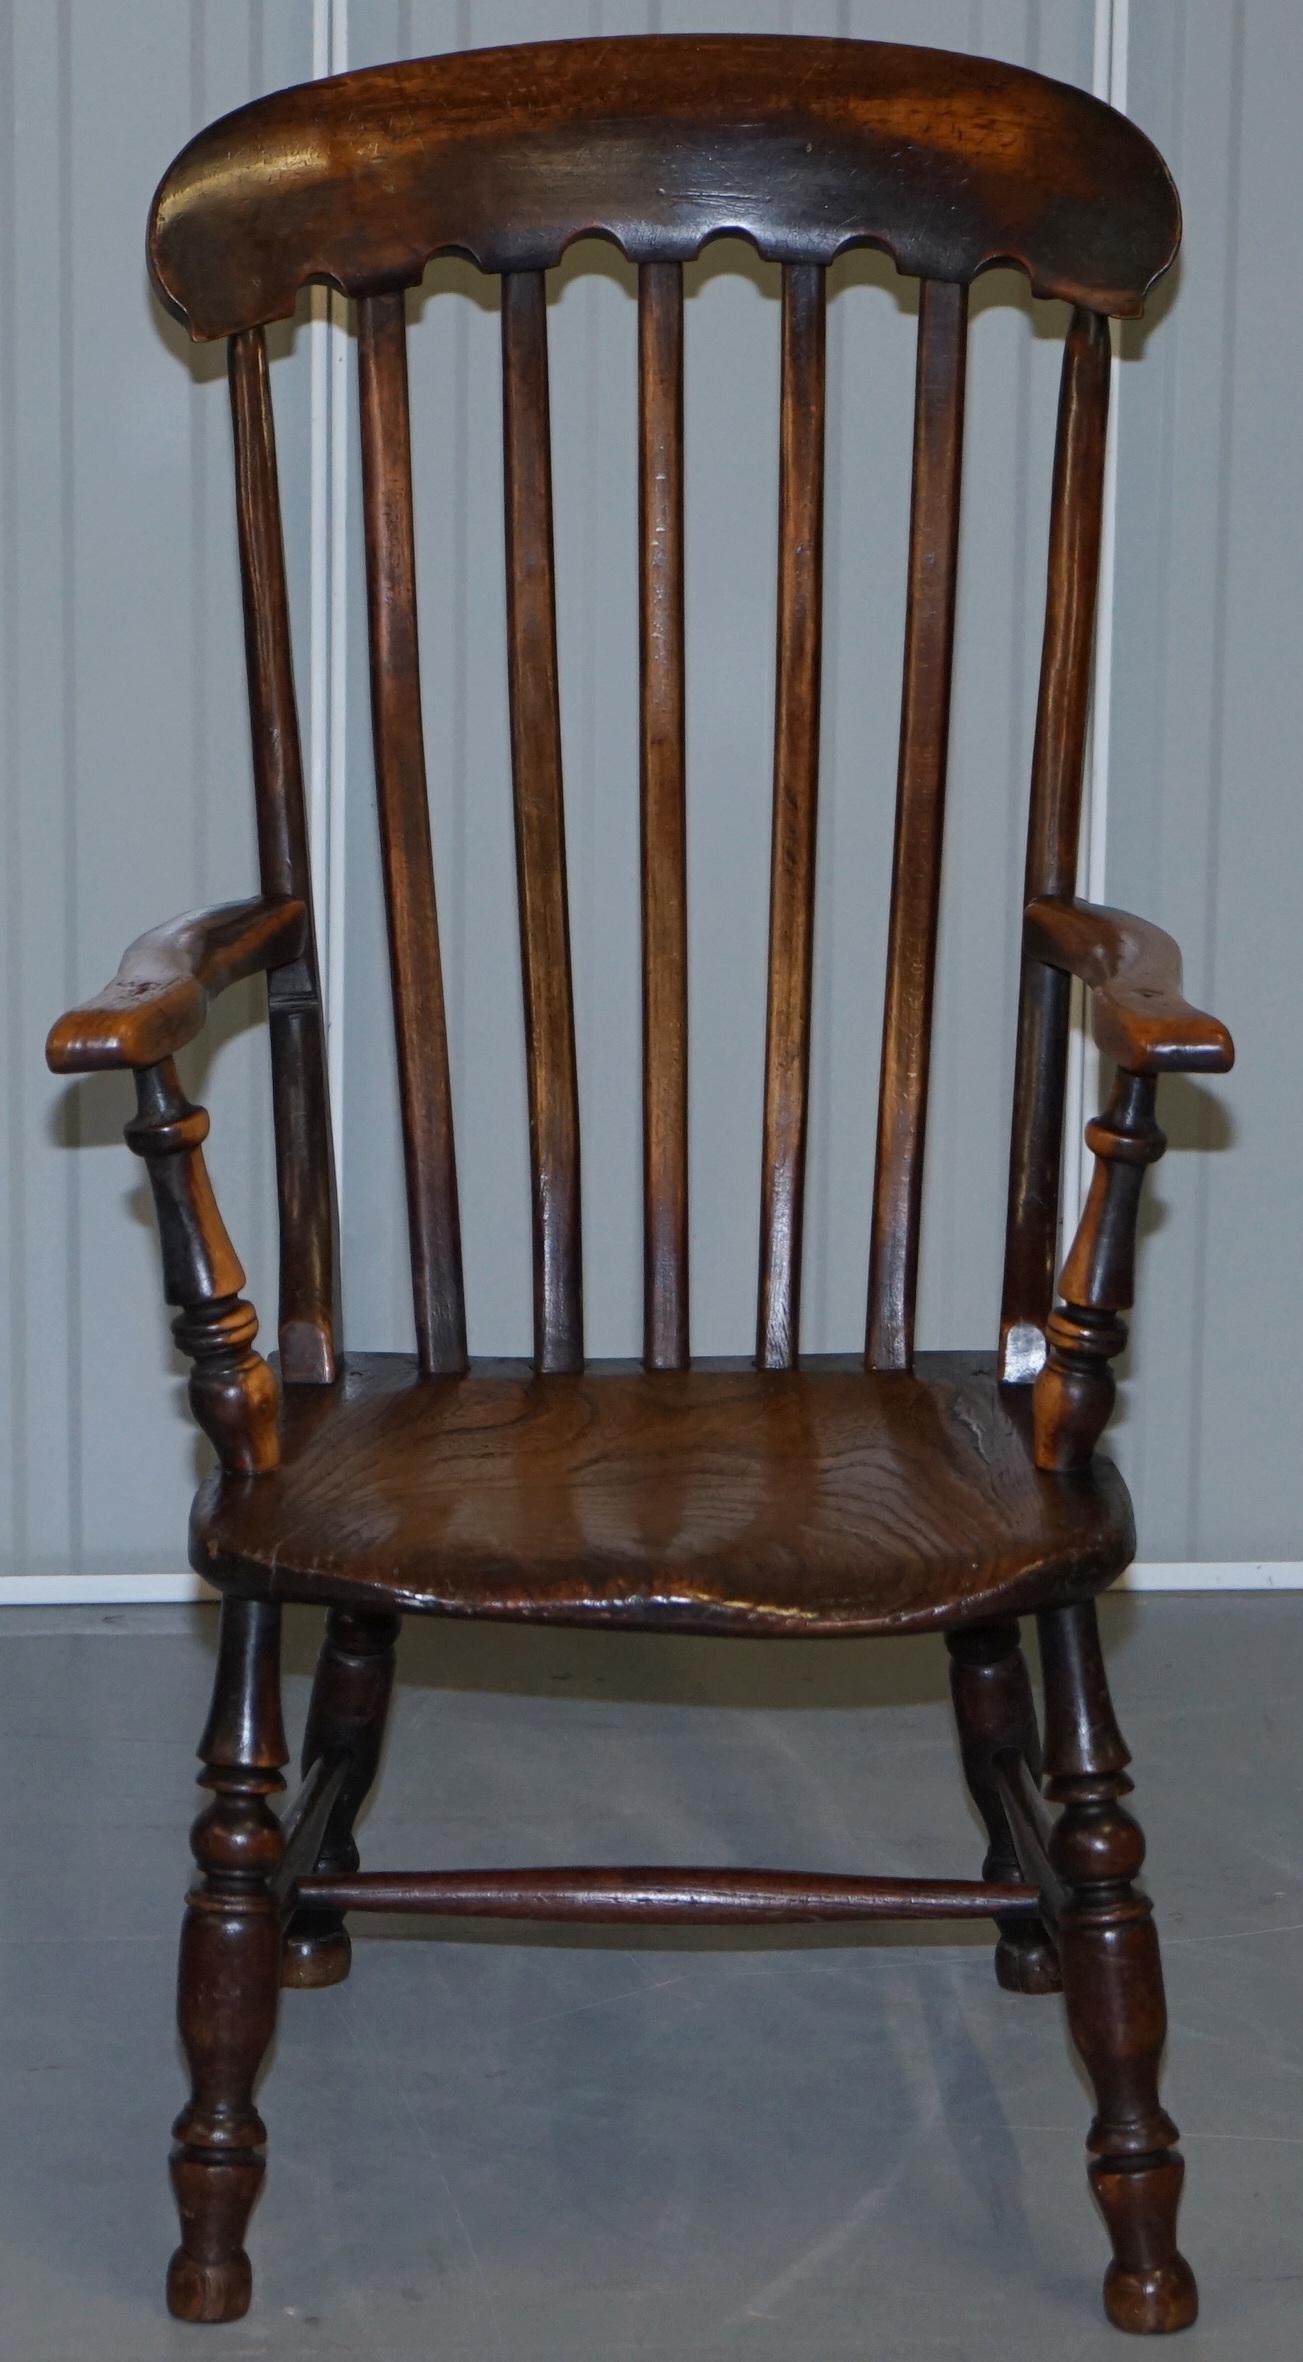 Wir freuen uns, diesen herrlichen Elm Thames Valley Windsor Sessel aus dem 19. Jahrhundert mit Originallackierung zum Verkauf anbieten zu können.

Ein sehr begehrter, gut verarbeiteter und dekorativer Sessel aus traditionellem Ulmenholz. Es